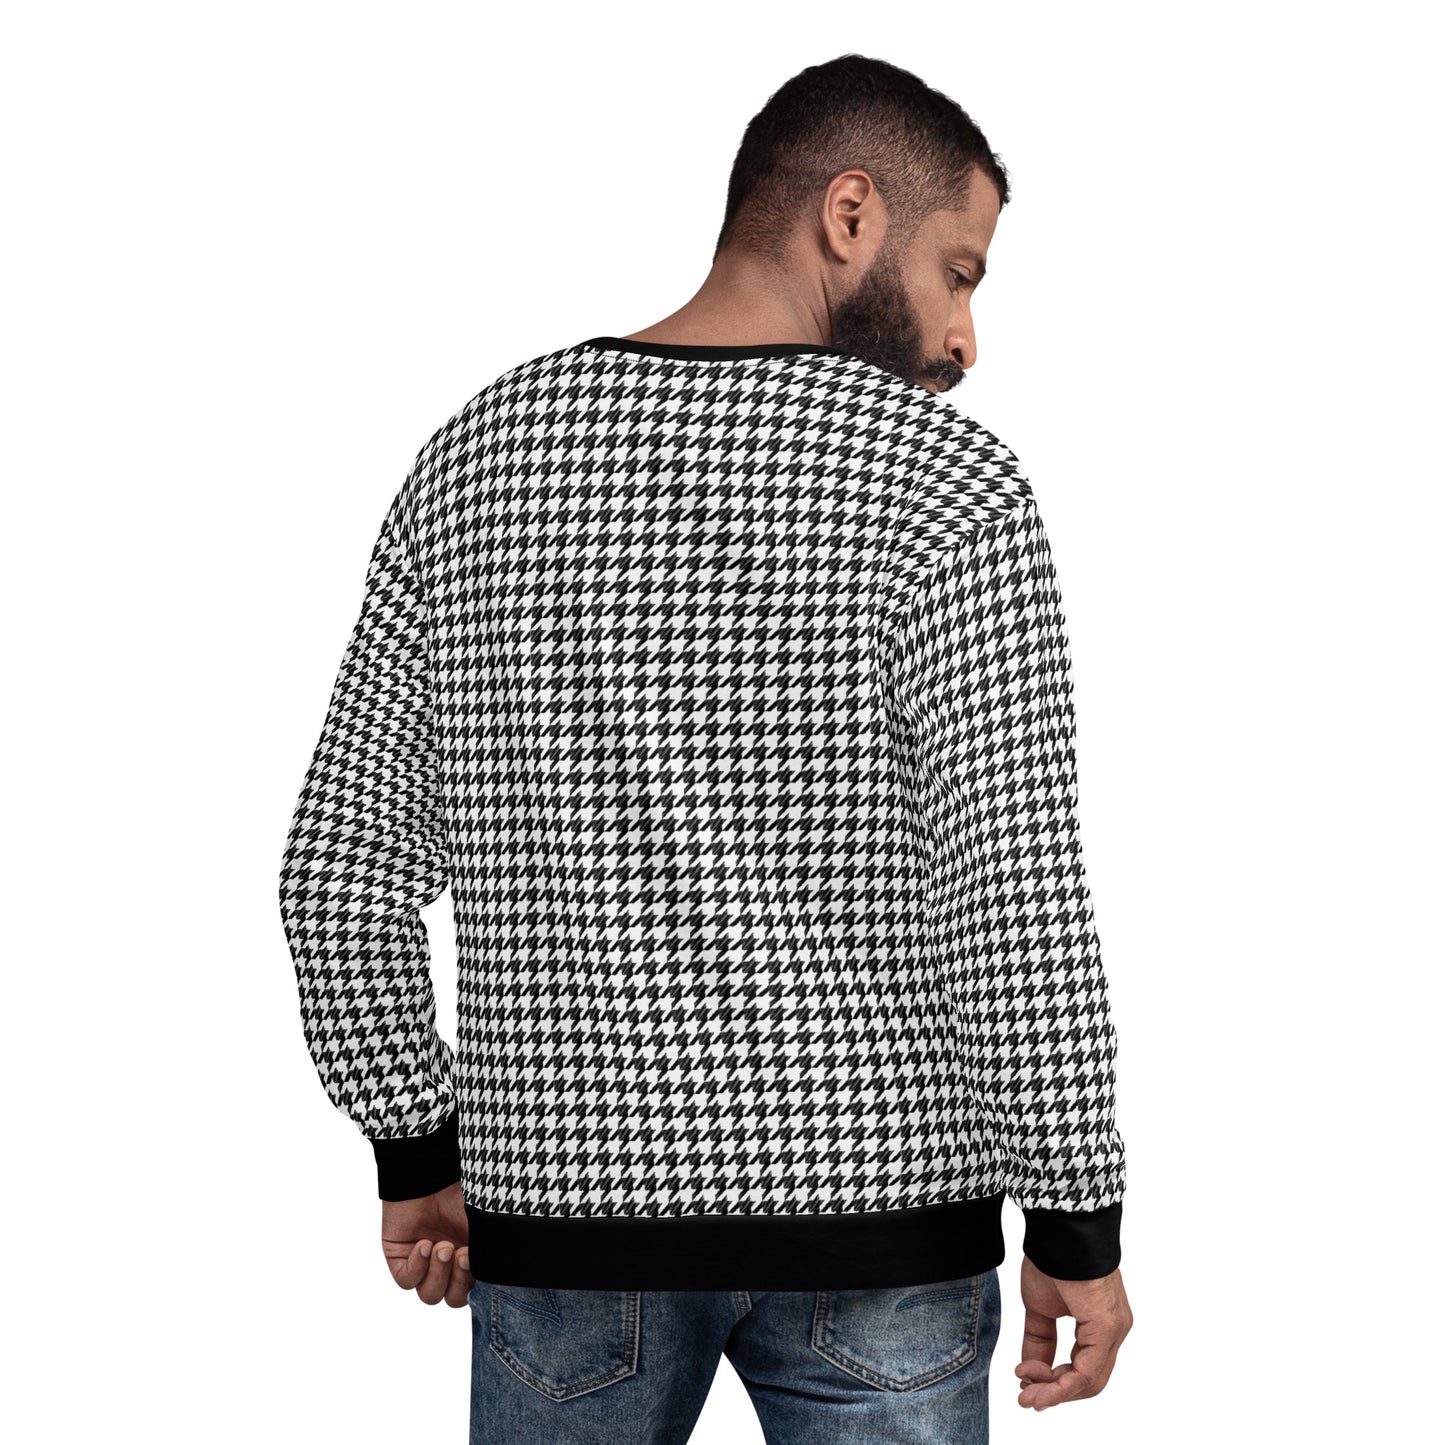 Houndstooth Black White Men Sweatshirt, Retro Pattern Check Plaid Cotton Sweater Jumper Vintage Designer Crewneck